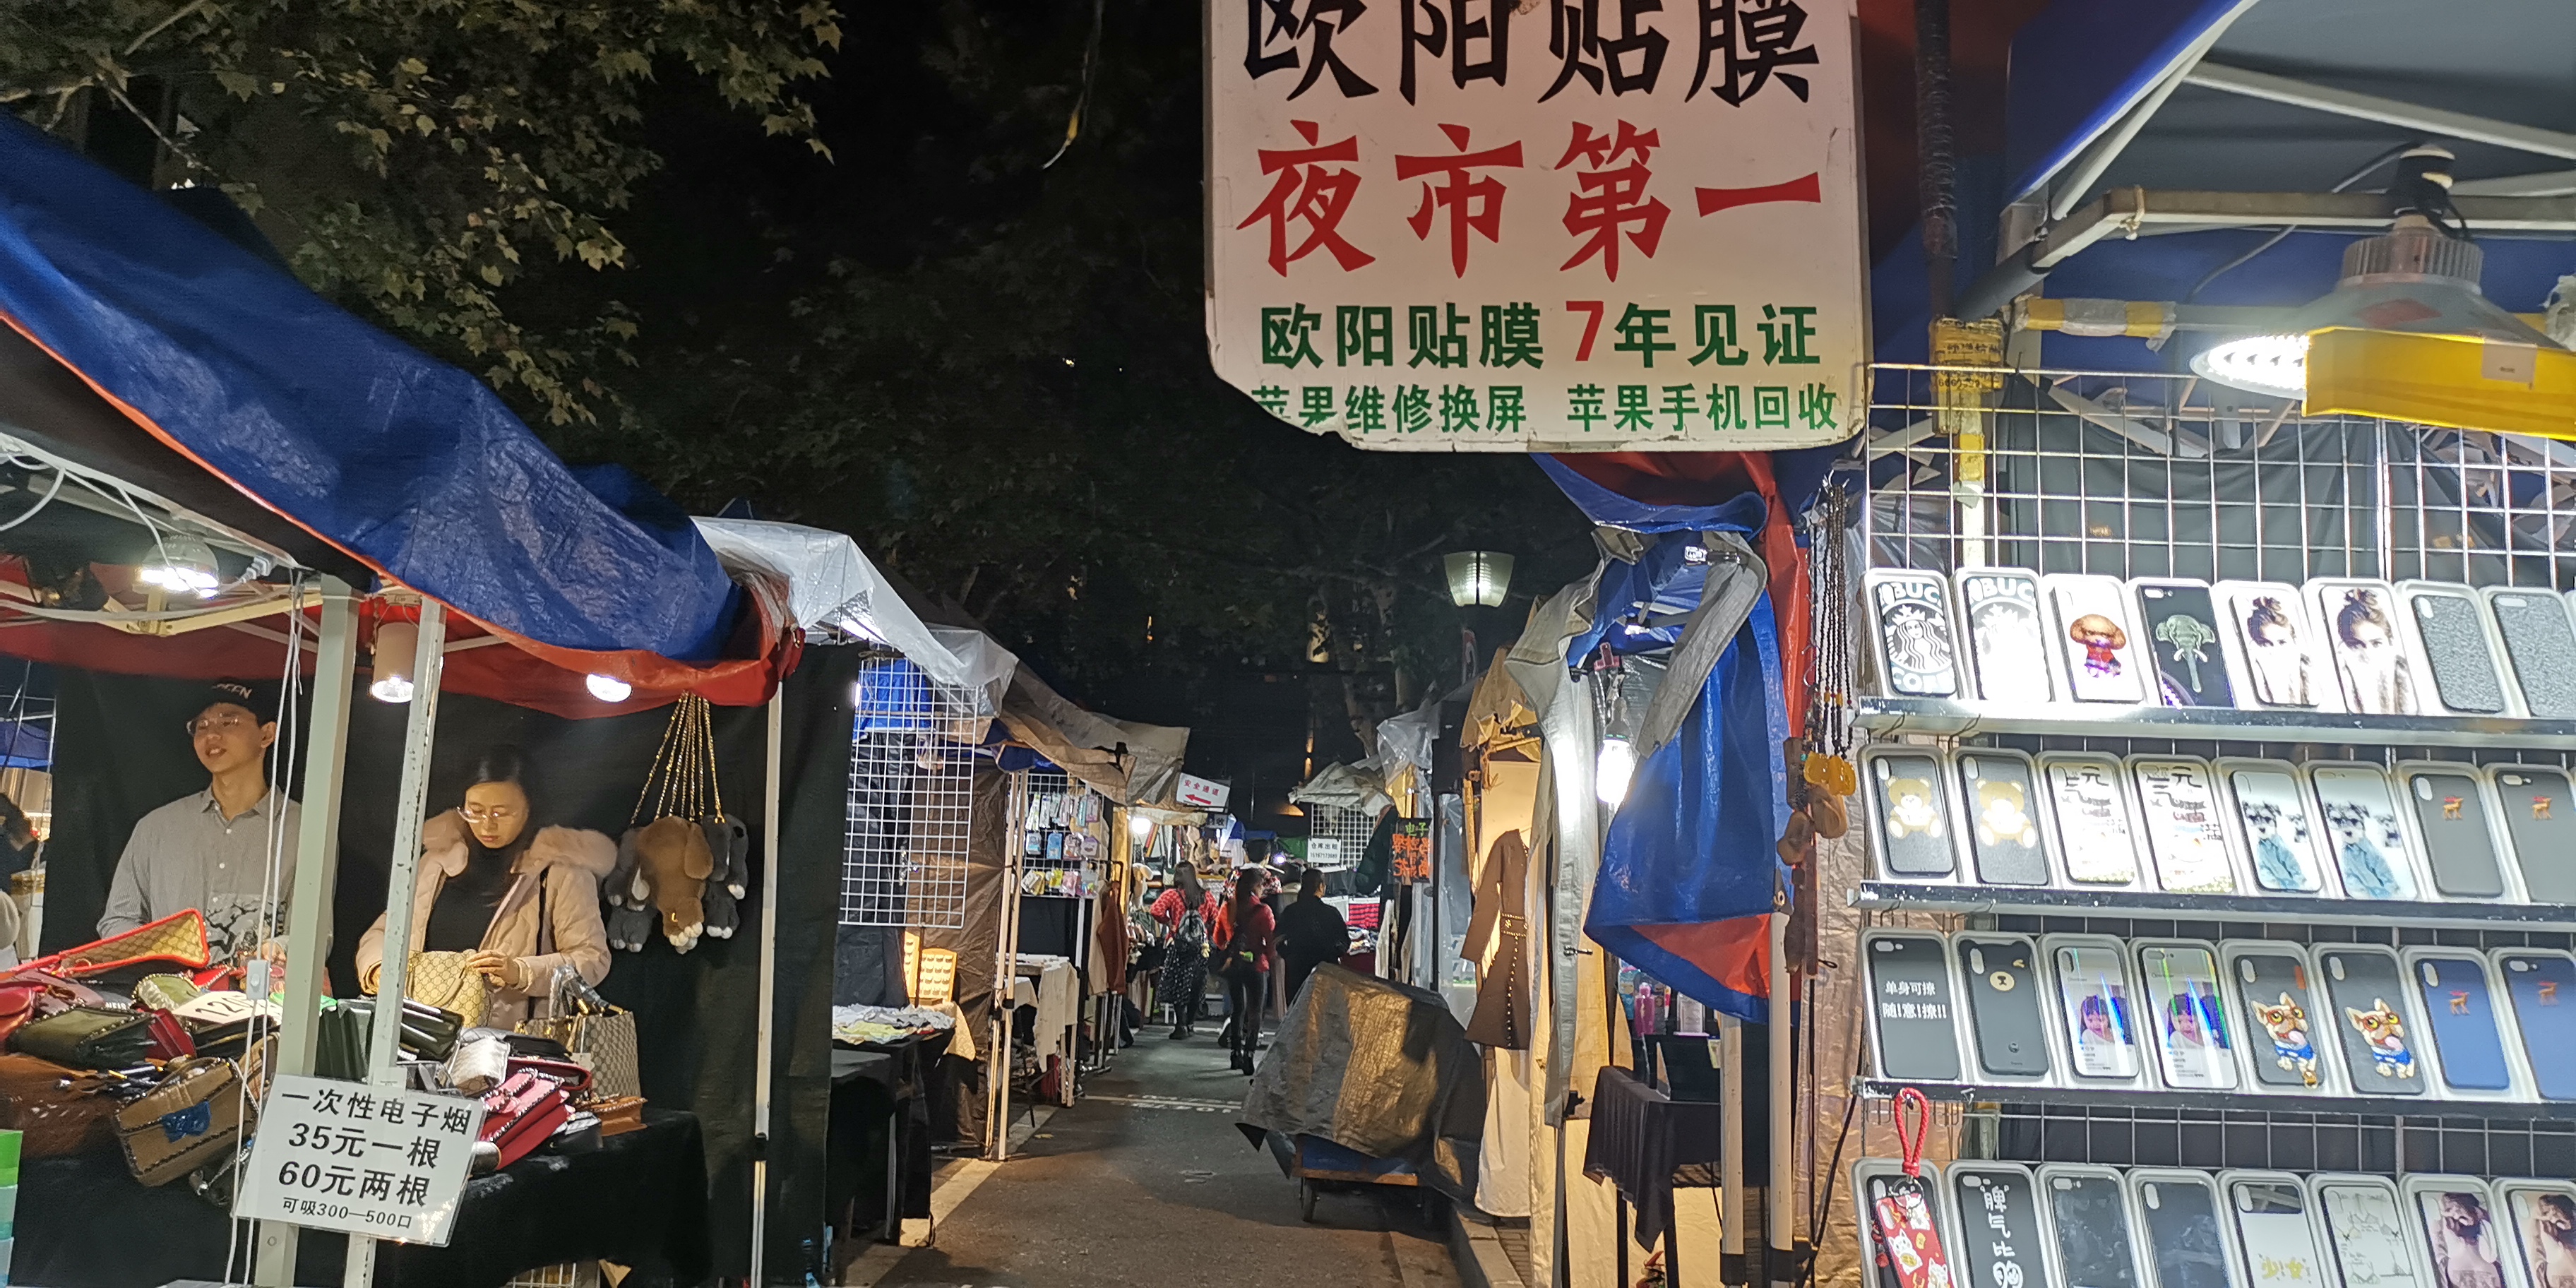 杭州吴山夜市,其实就是一个小商摊贩的集中地